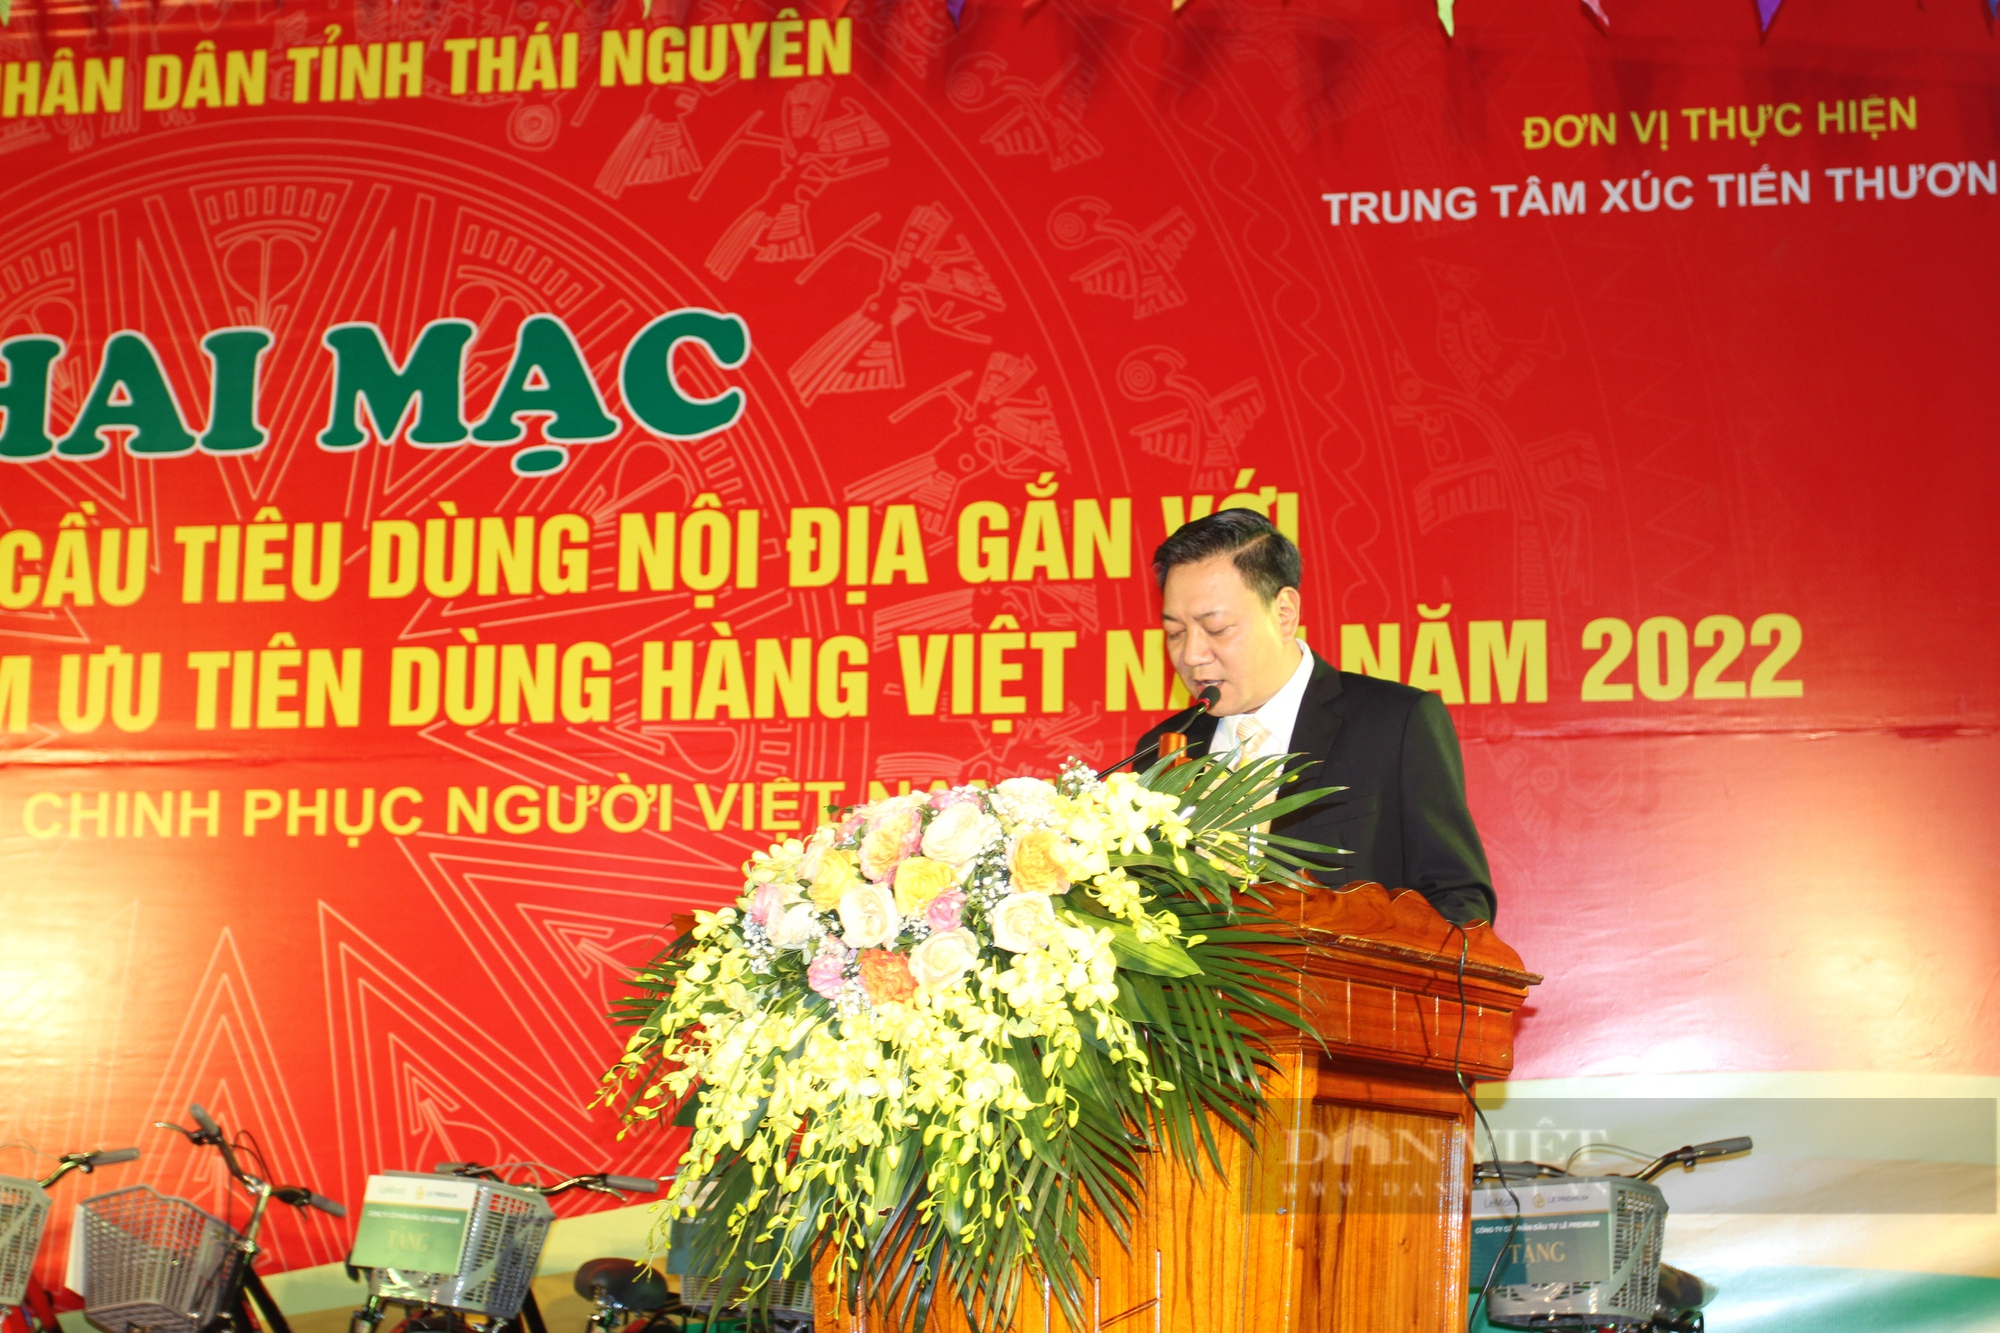 Thái Nguyên: Hội chợ kích cầu tiêu dùng gắn với cuộc vận động “Người Việt ưu tiên dùng hàng Việt” - Ảnh 4.